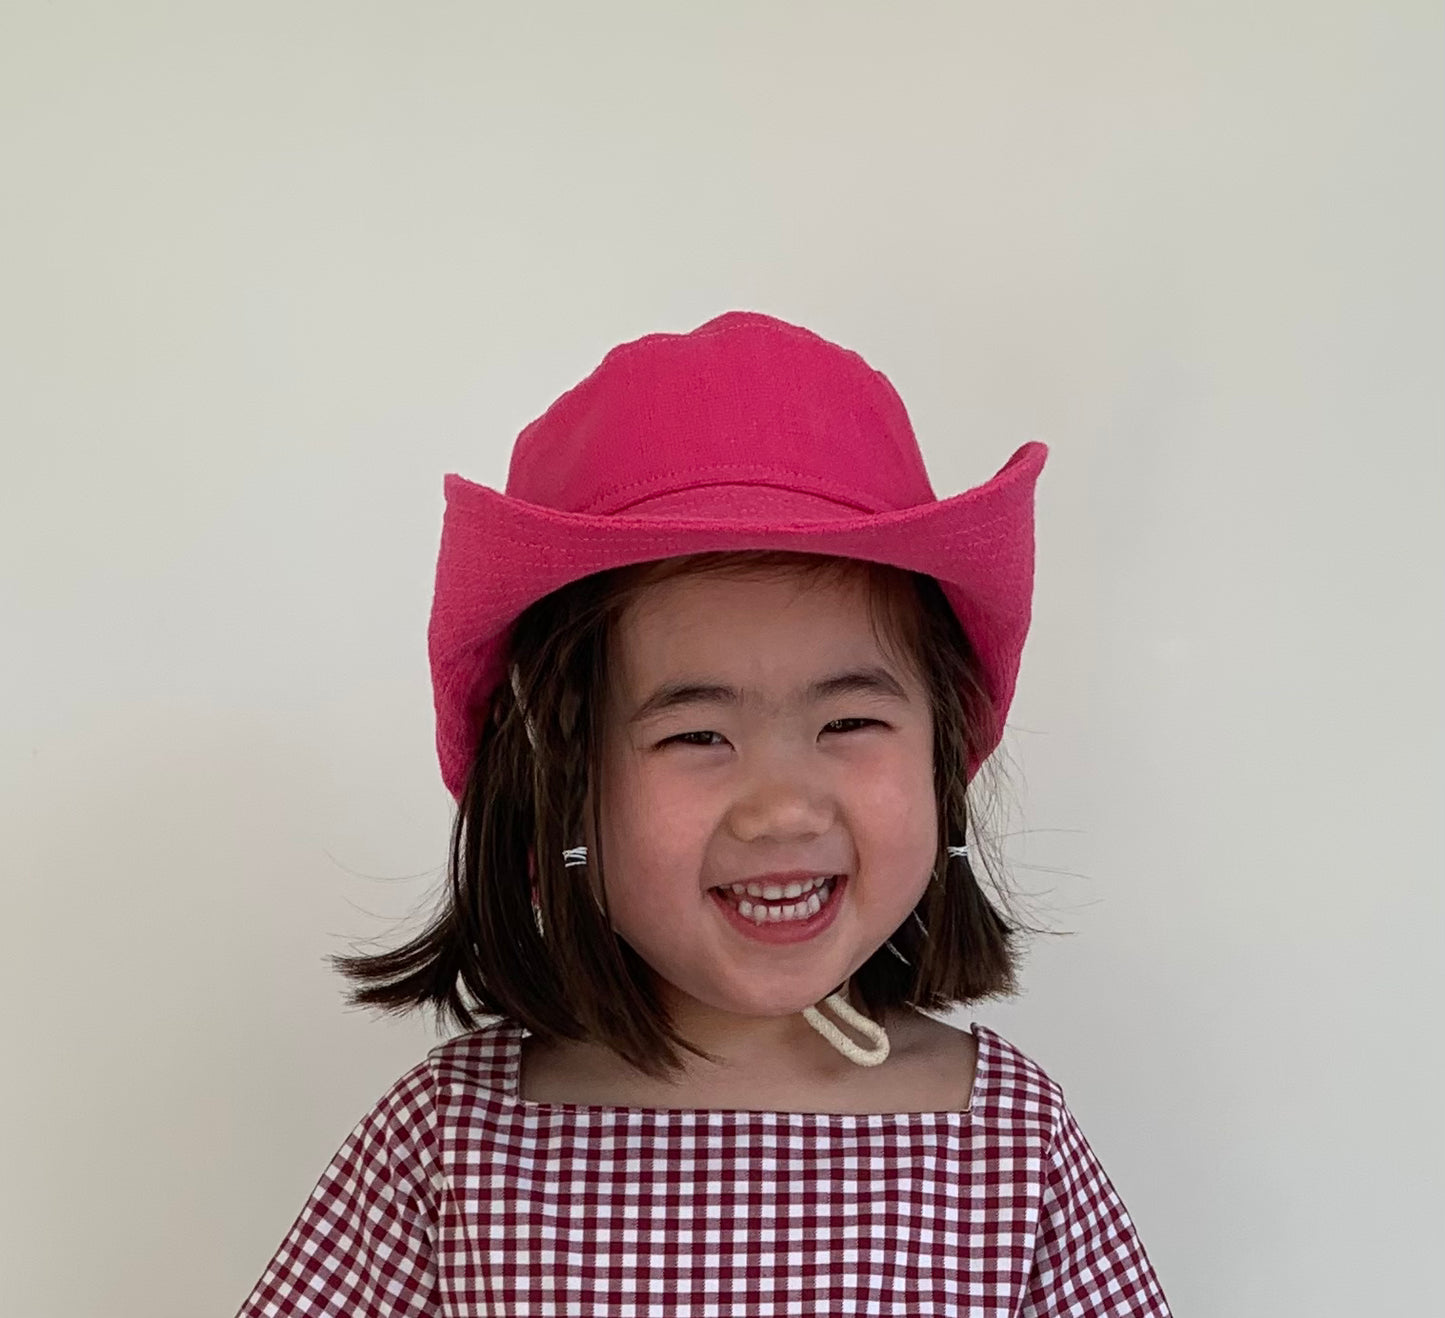 Unisex cowboy/ cowgirl hat